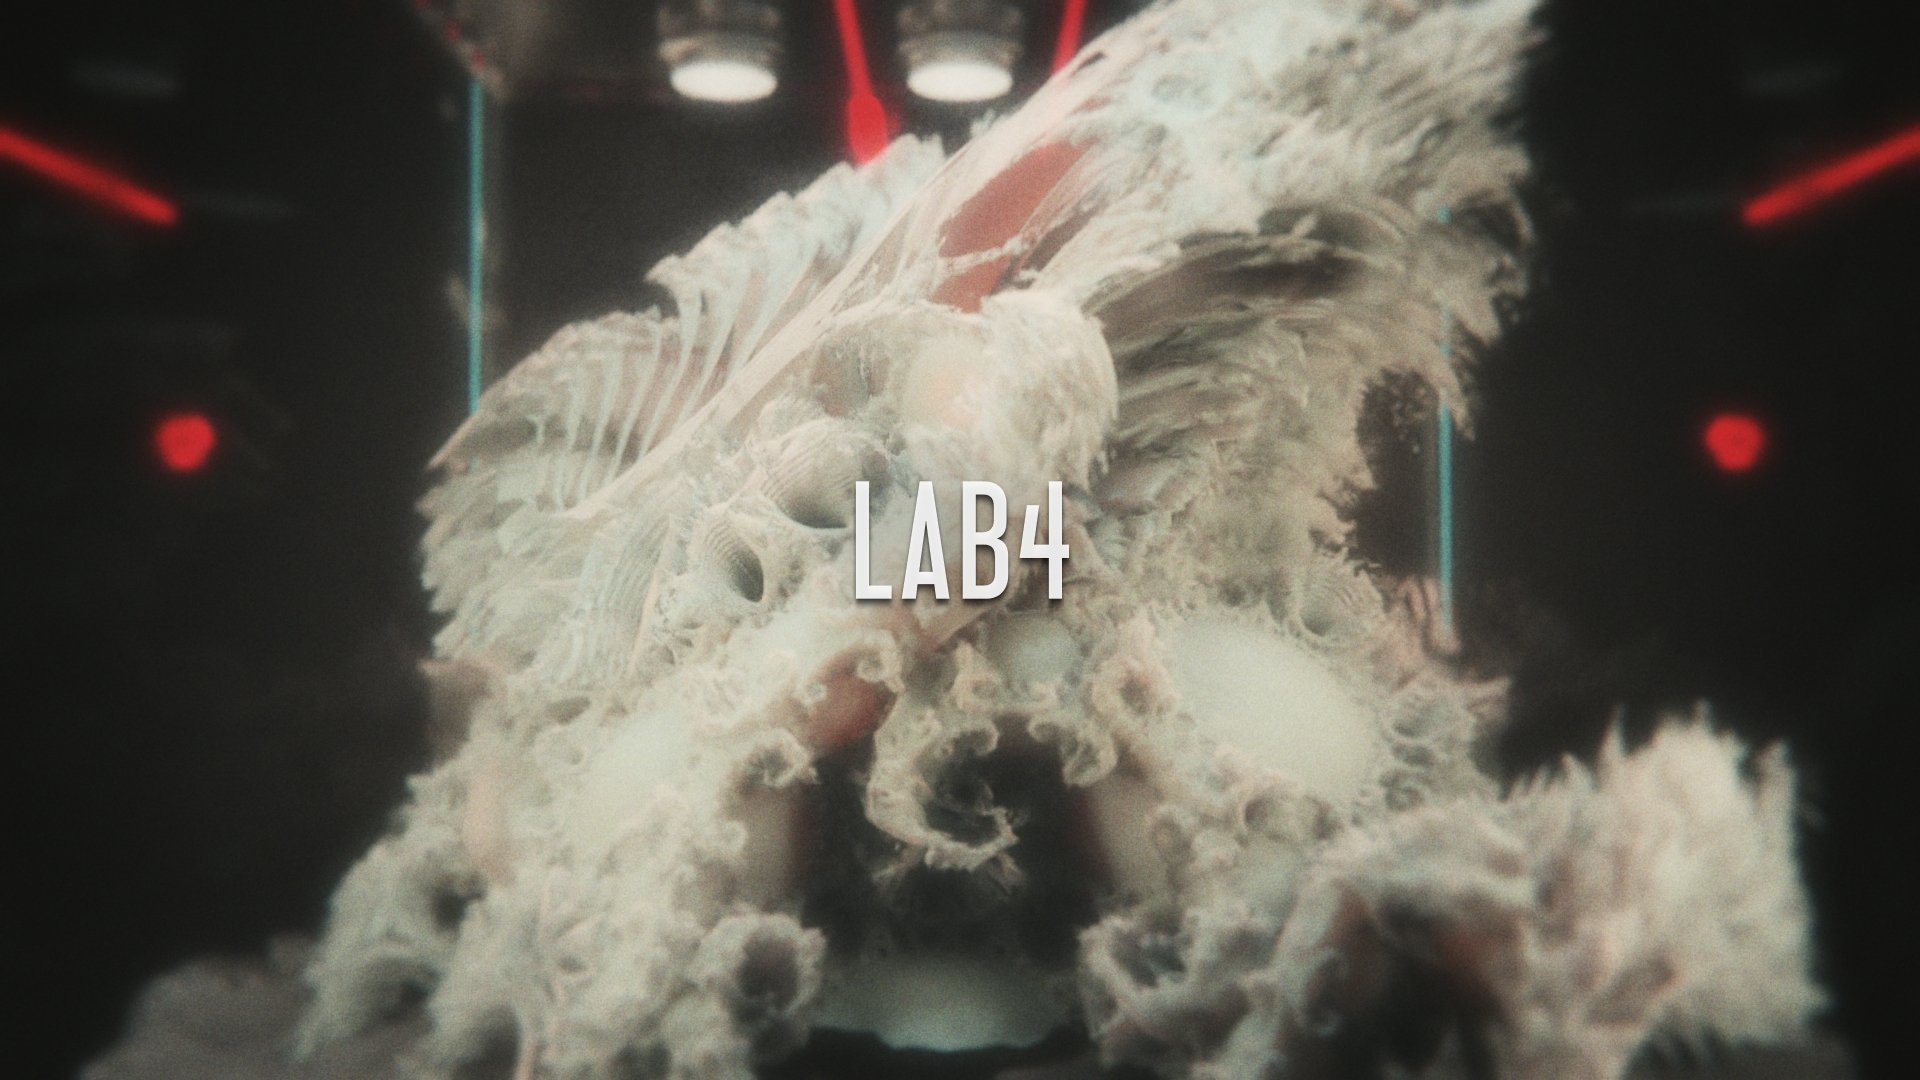 Lab4